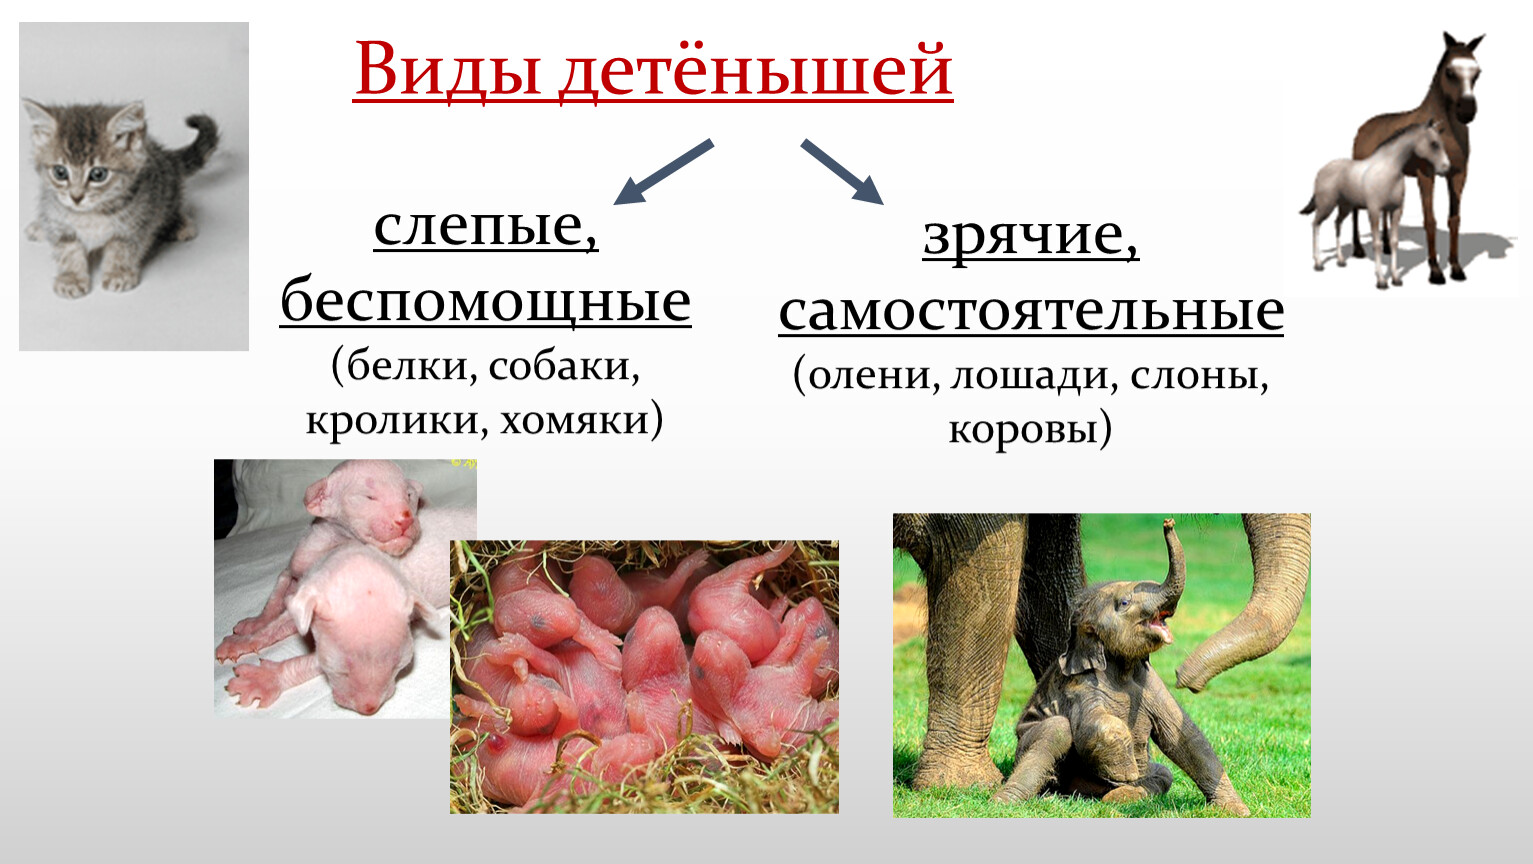 Какой тип развития характерен для животных потомство